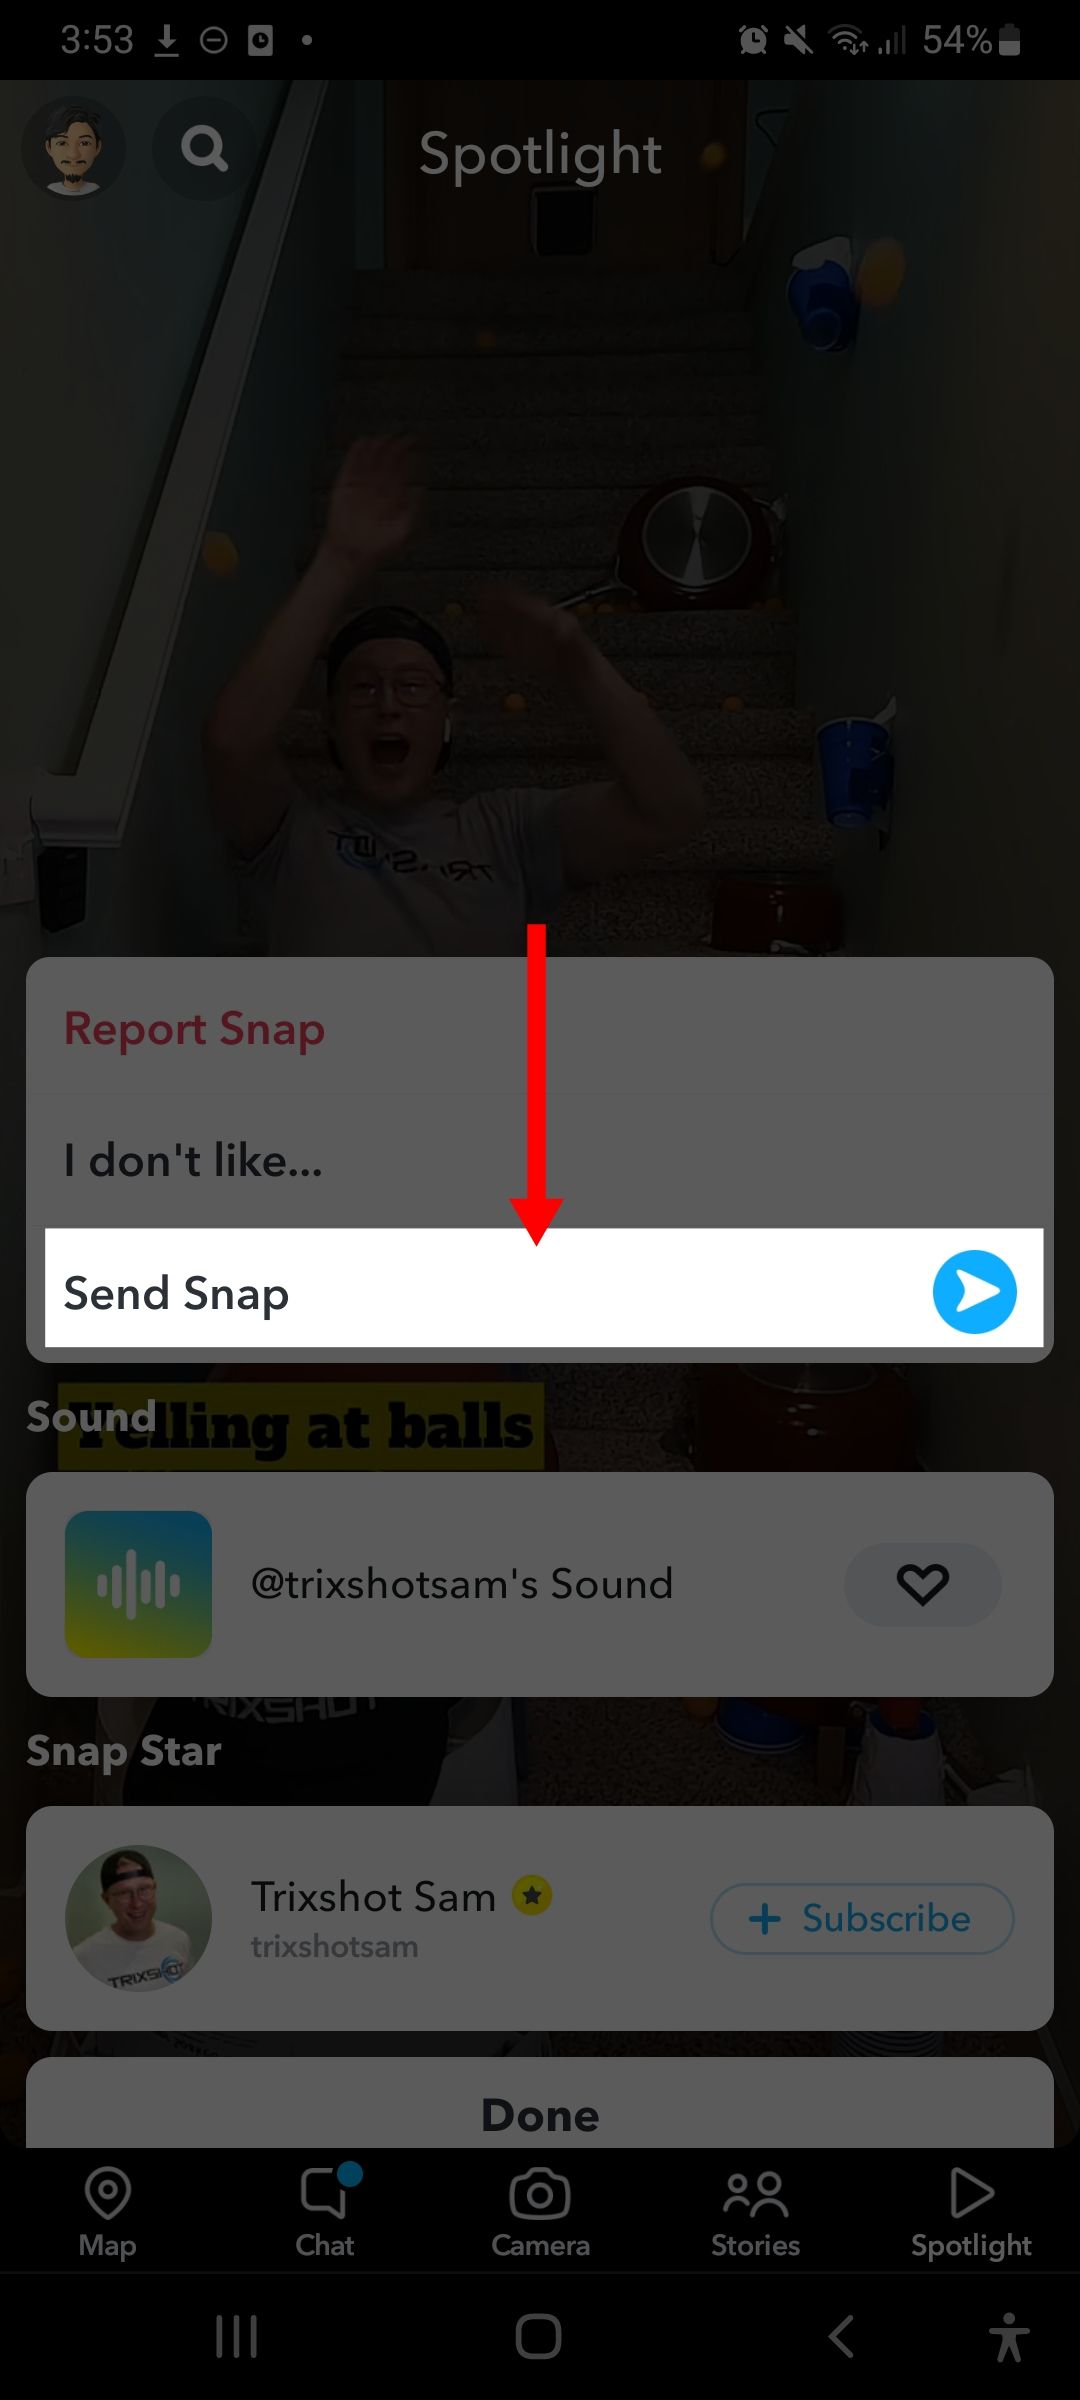 cara membuat video di snapchat dengan filter lucu